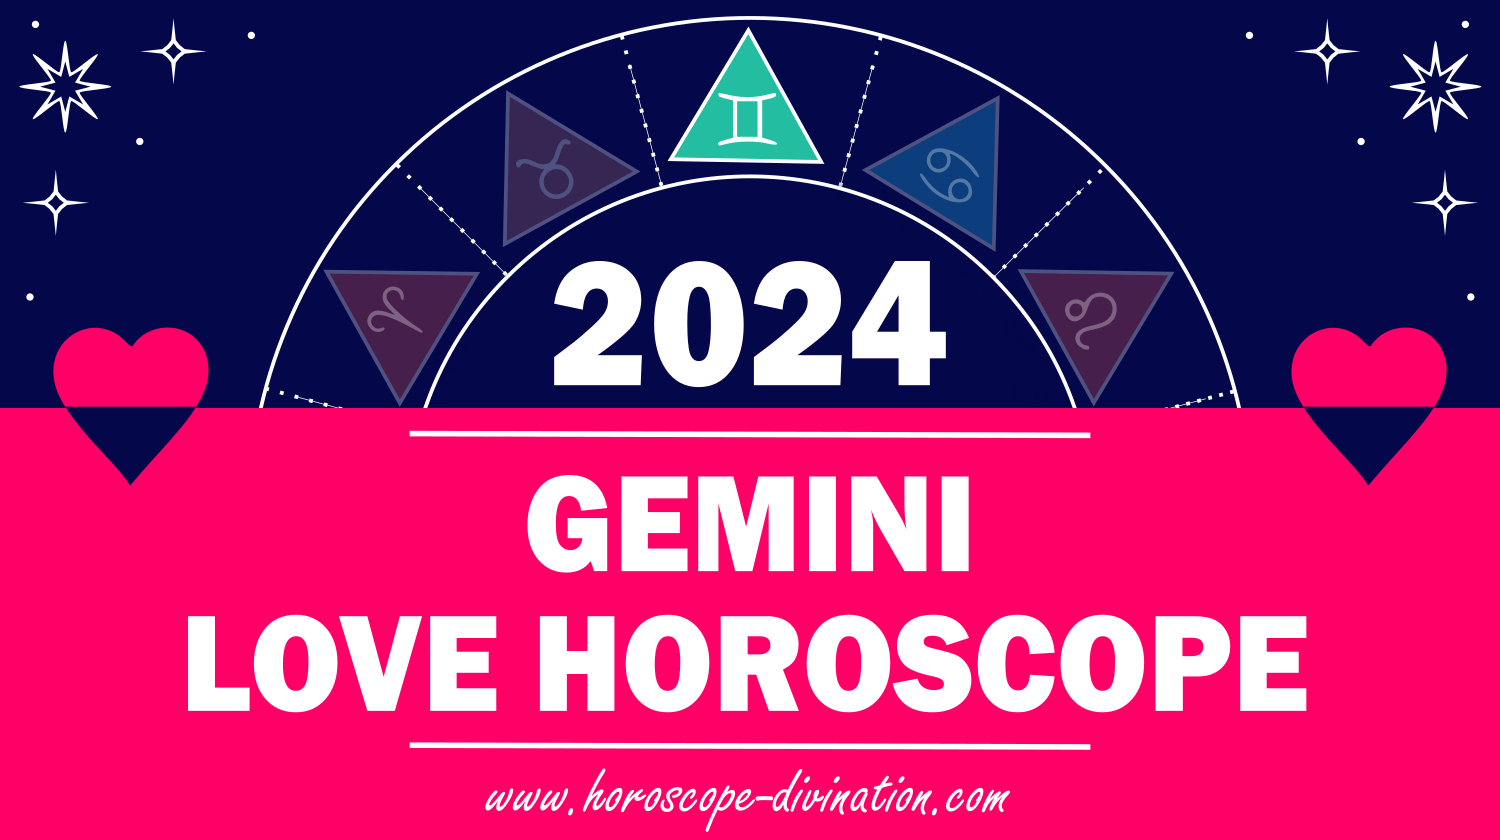 Gemini Love Horoscope 2024 Love & Relationships prediction horoscope